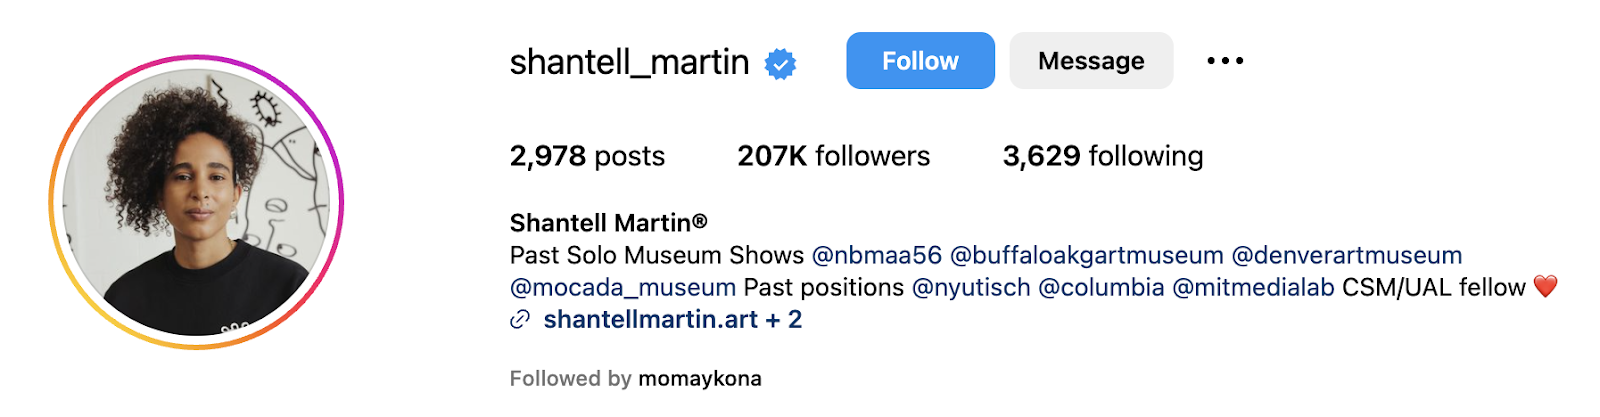 A screenshot of an instagram profile of shantell martin, a famous artist